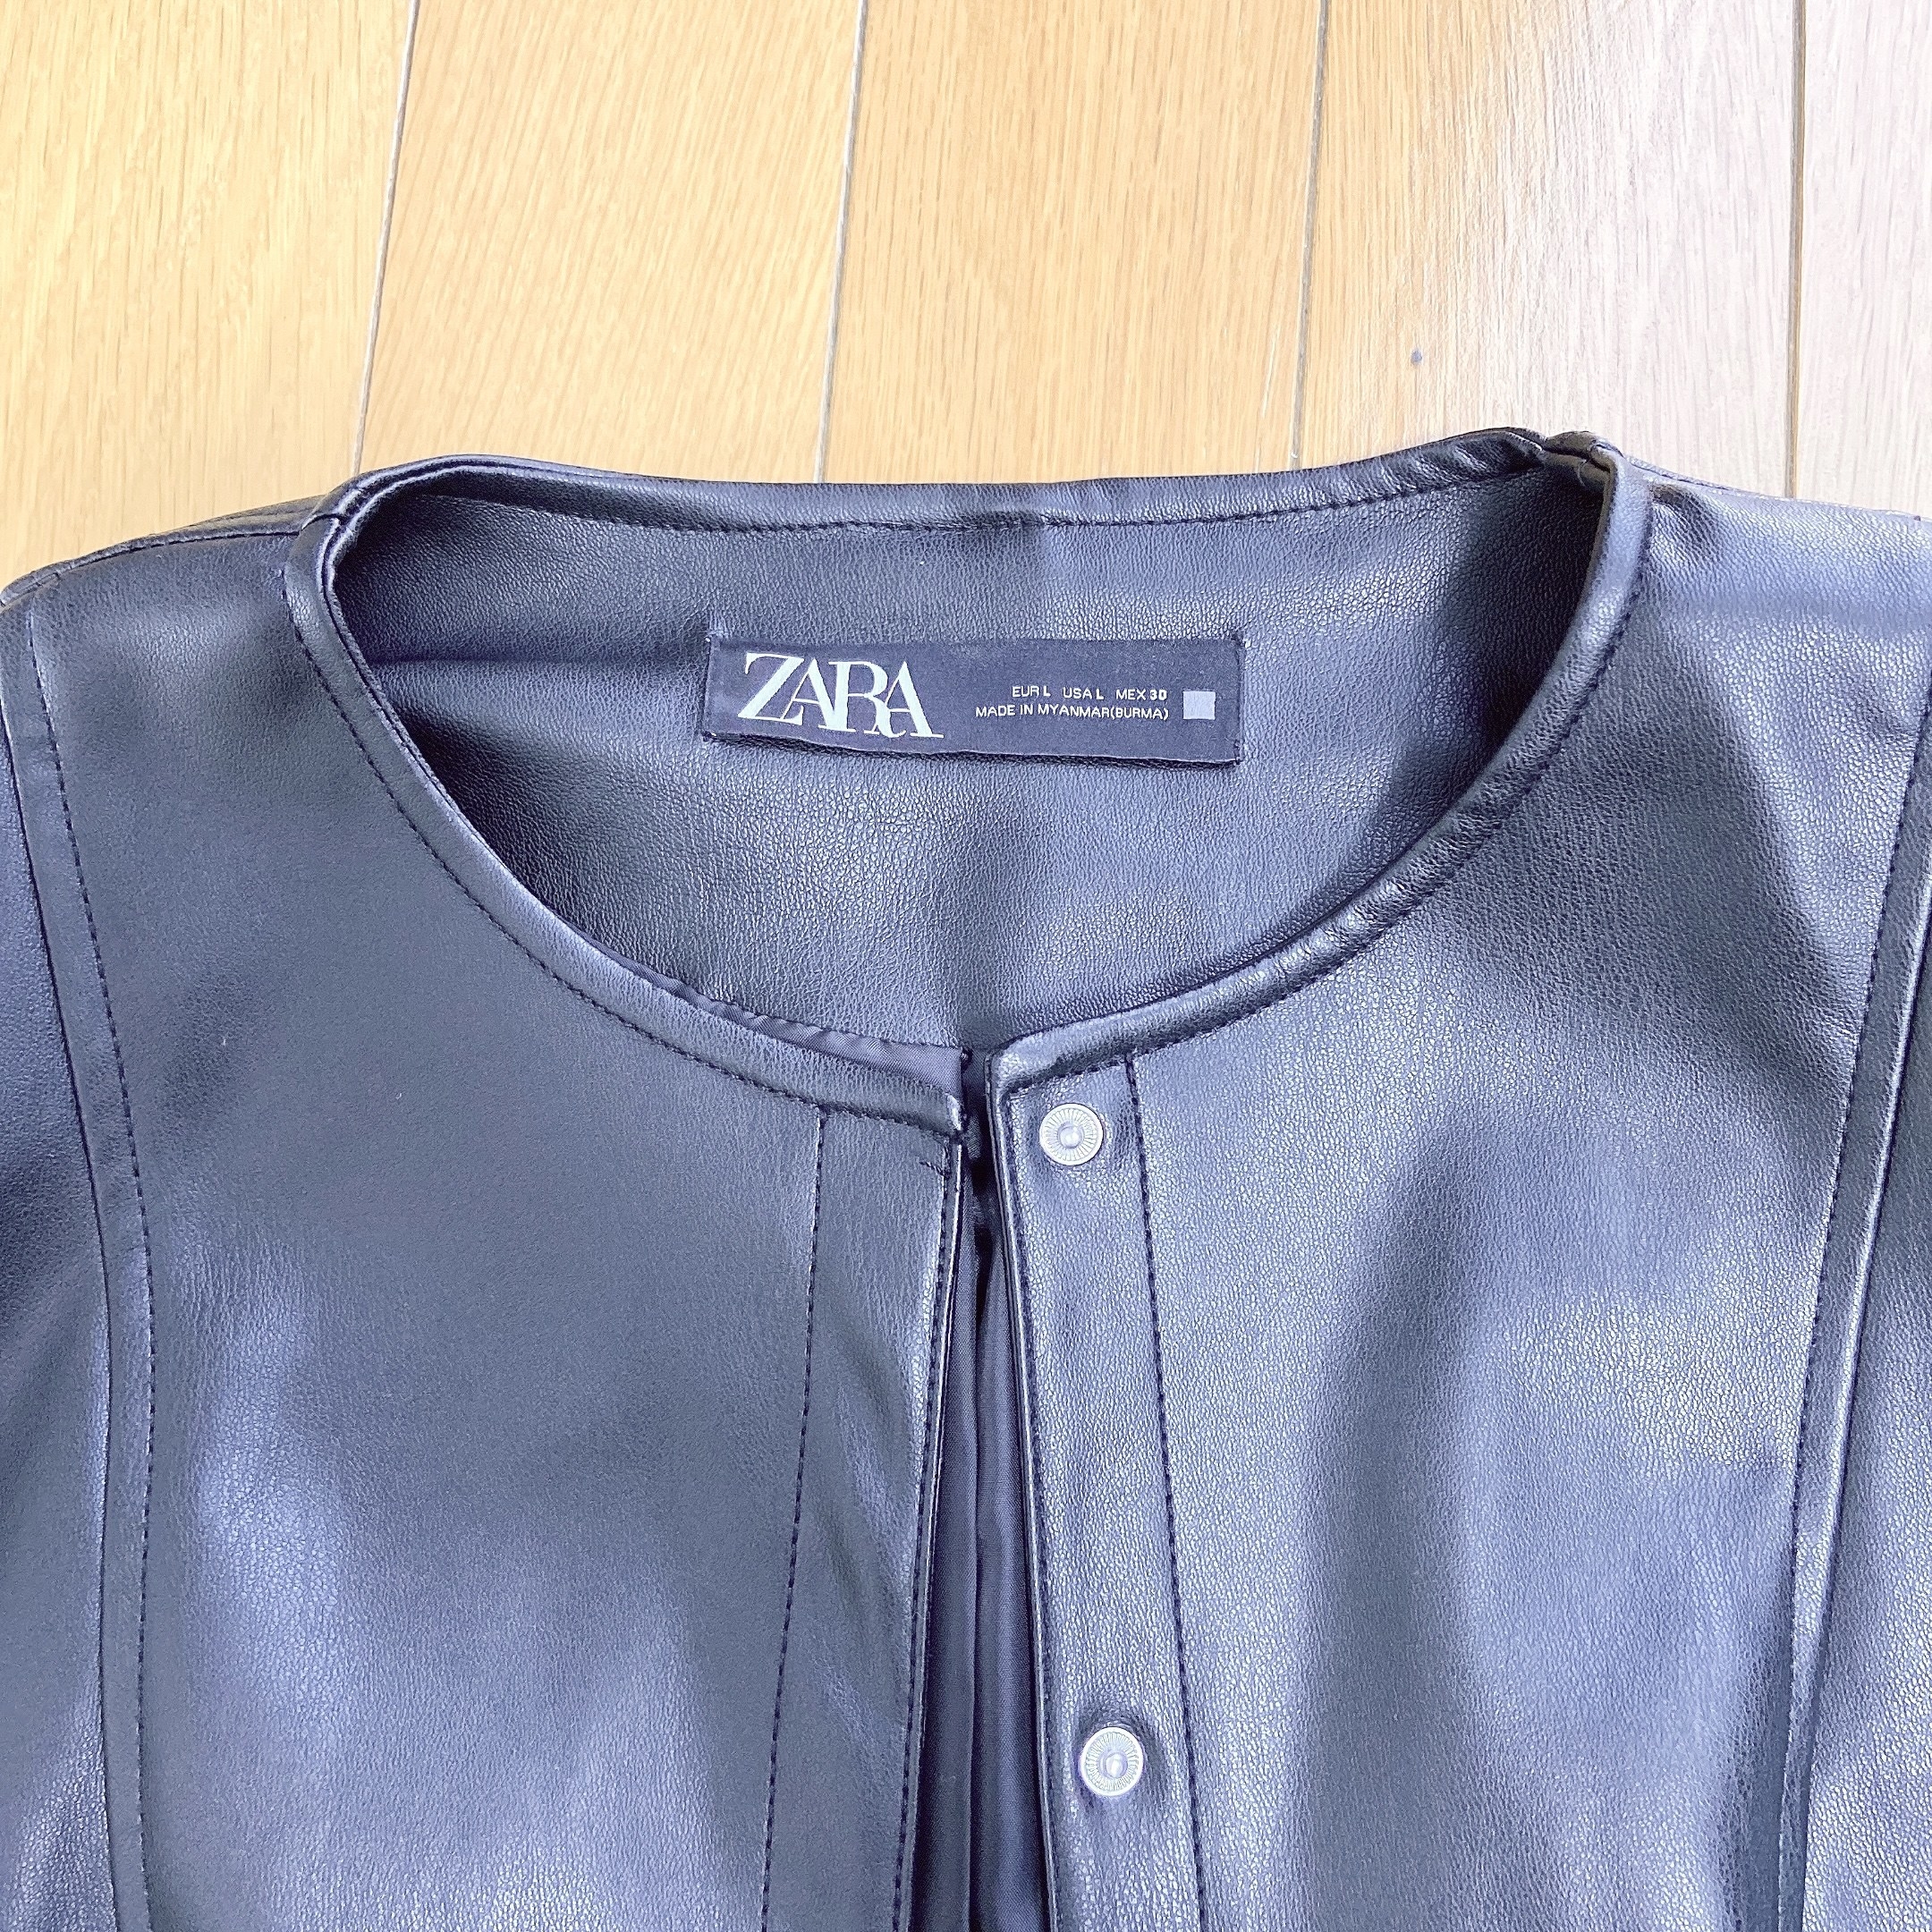 春アウター はこれ以外必要ないわ Zaraの 4990円ジャケット がめっちゃカッコいい